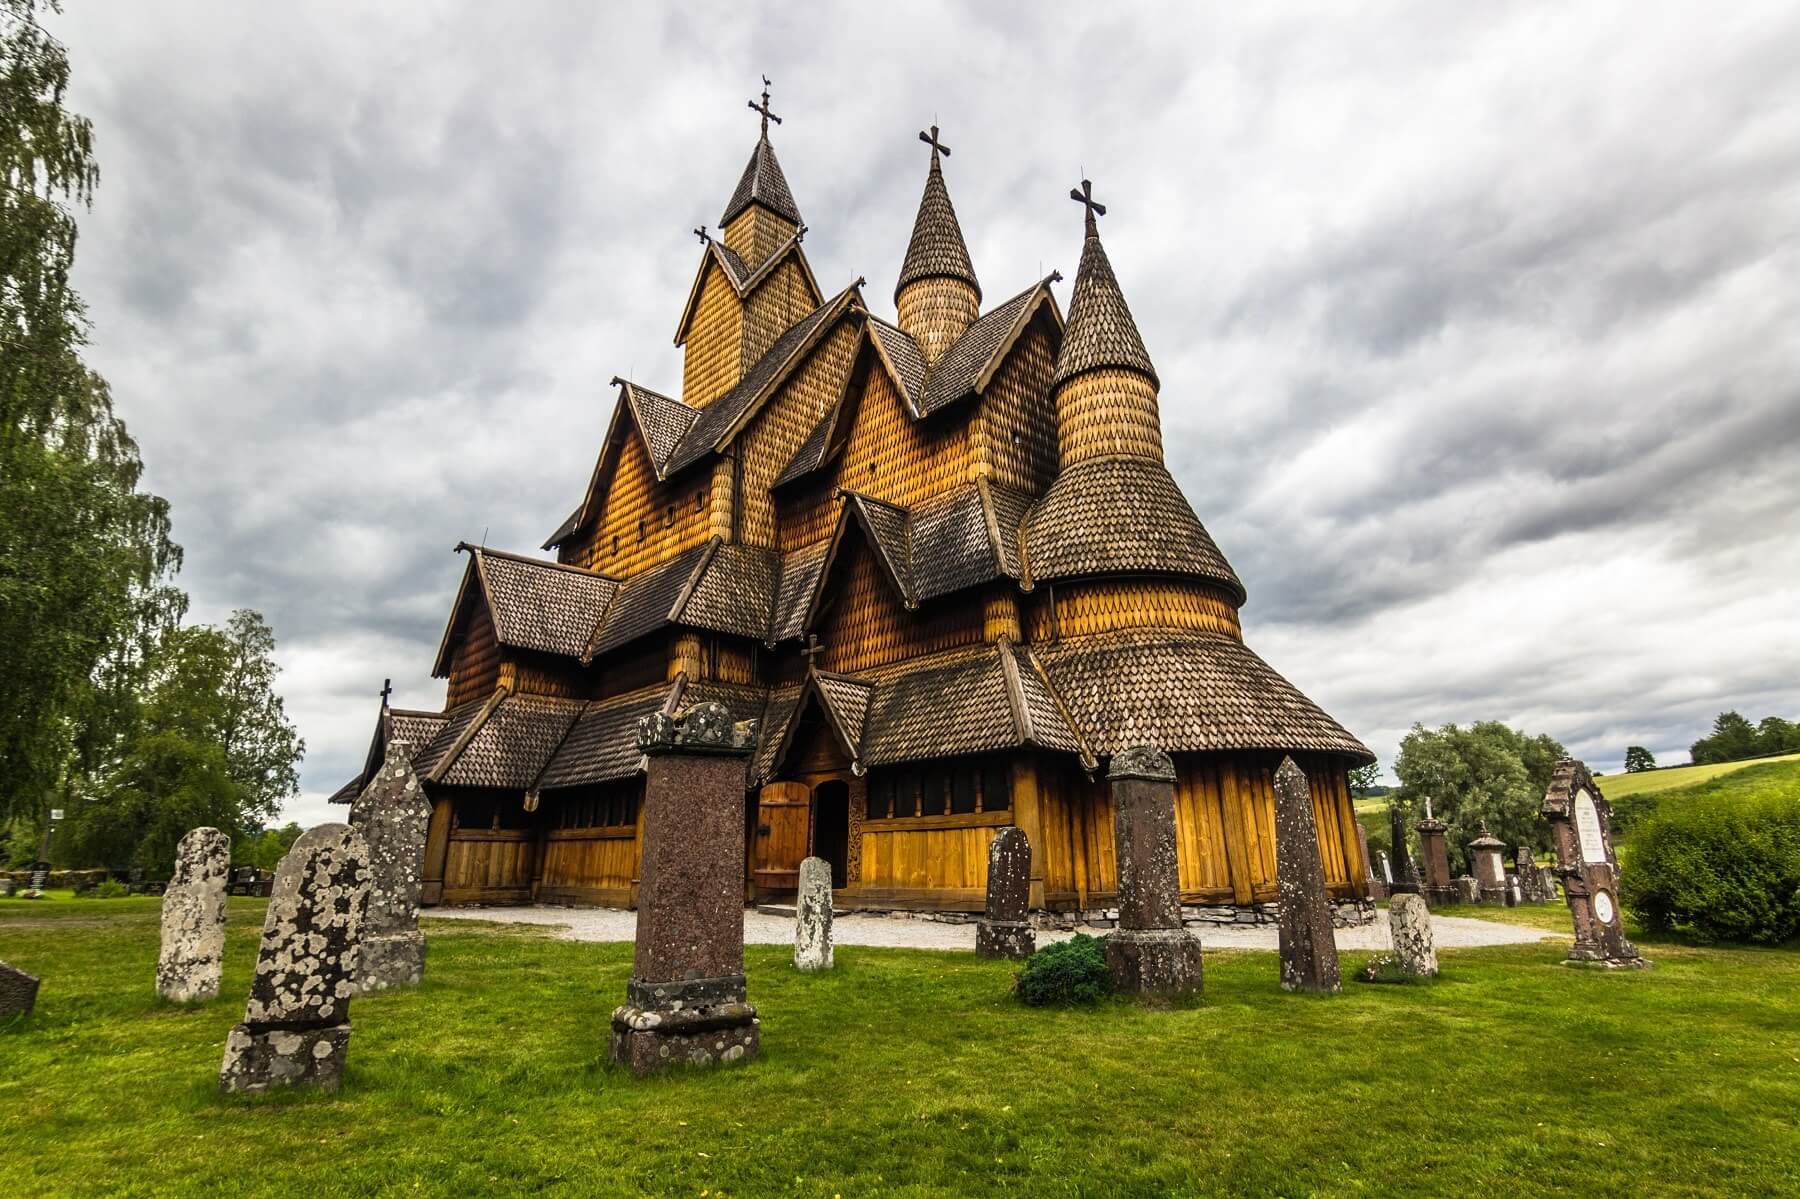 Découvrir la Norvège lieux d'intérêt monuments église en bois debout